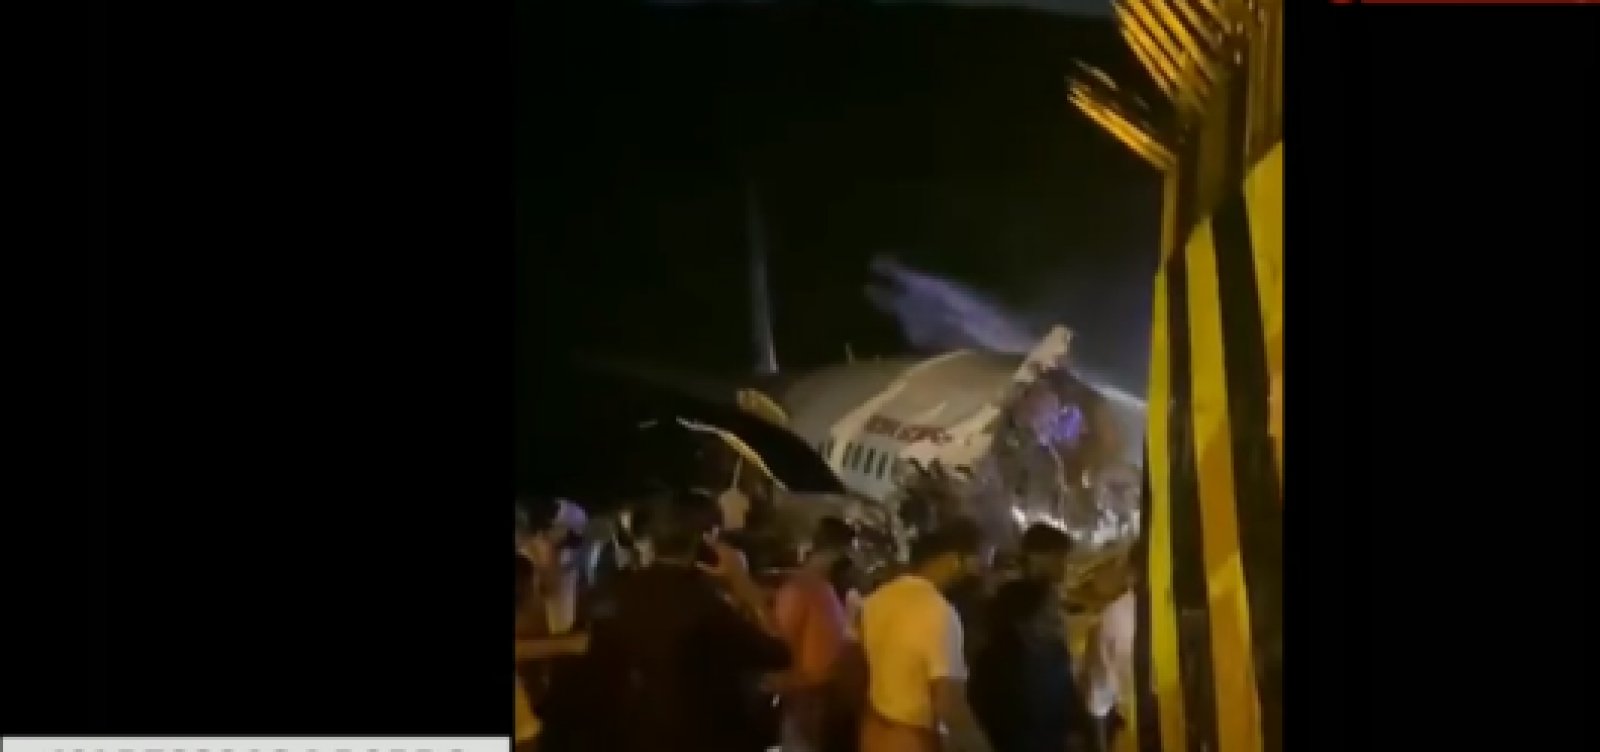 Acidente com avião na Índia deixa dois mortos; 200 passageiros estavam a bordo